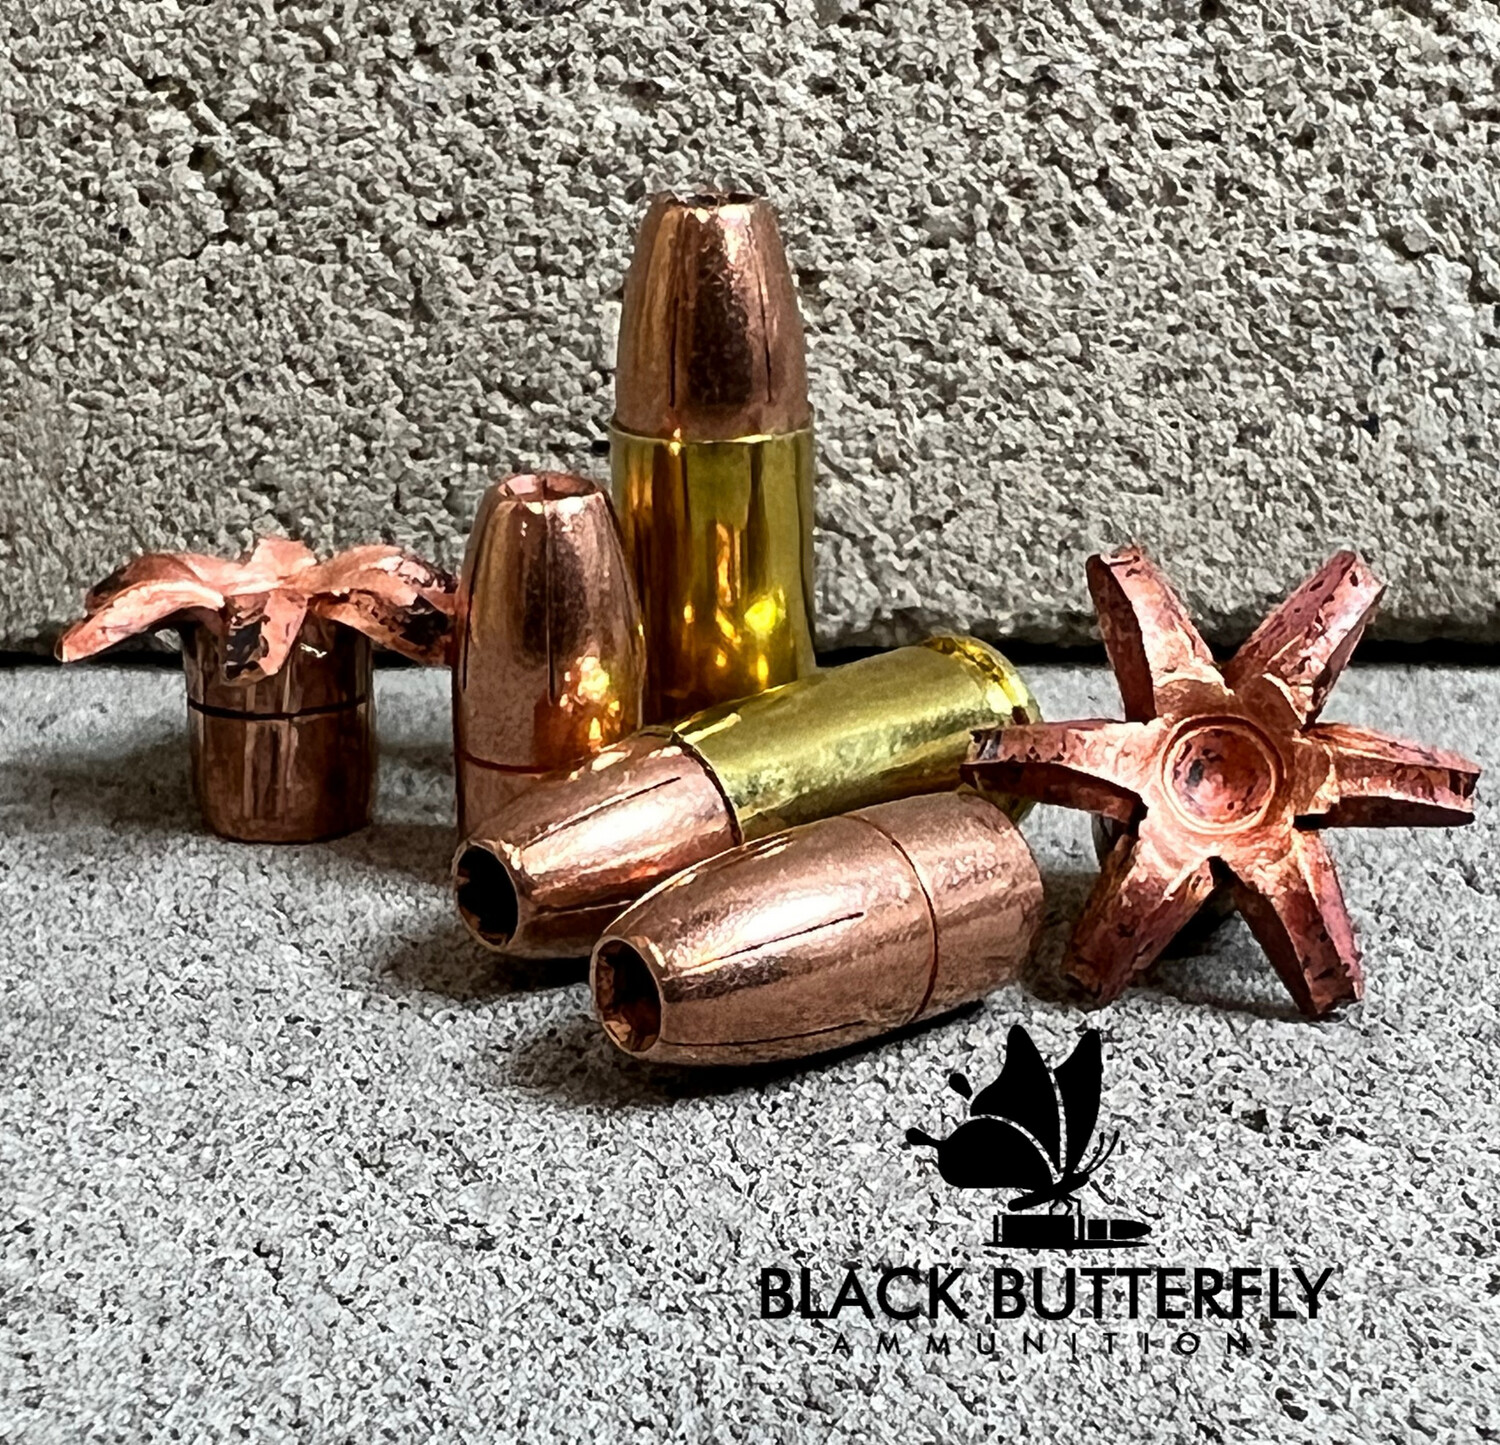 Black Butterfly Ammunition, Premium Self Defense Ammunition, 9mm Luger, 115 gr +P TCX (Total Copper Expanding) Solid Copper Self Defense Ammunition , 100 Round, "MAG DUMP BOX"